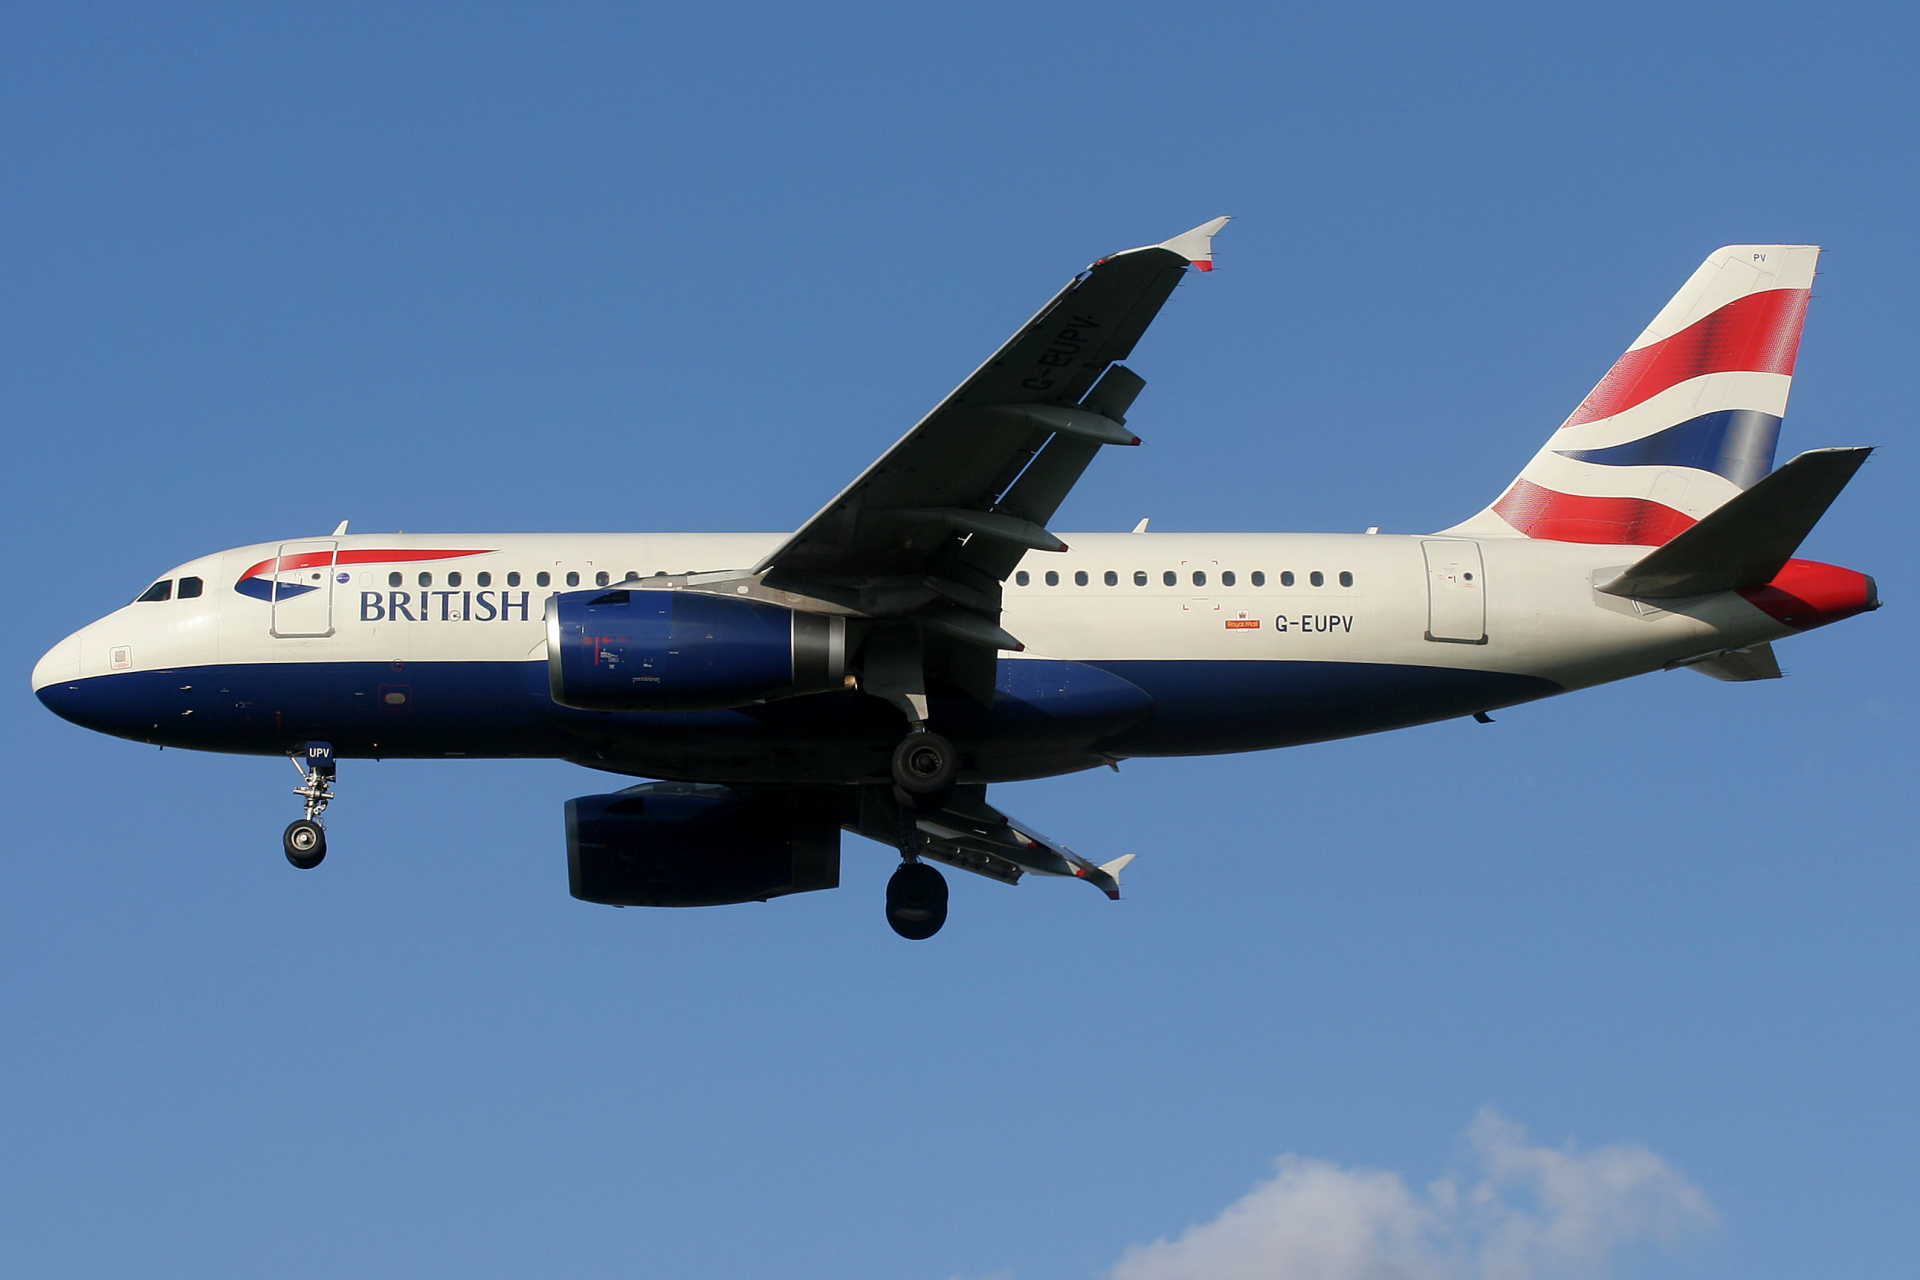 G-EUPV (Aircraft » EPWA Spotting » Airbus A319-100 » British Airways)